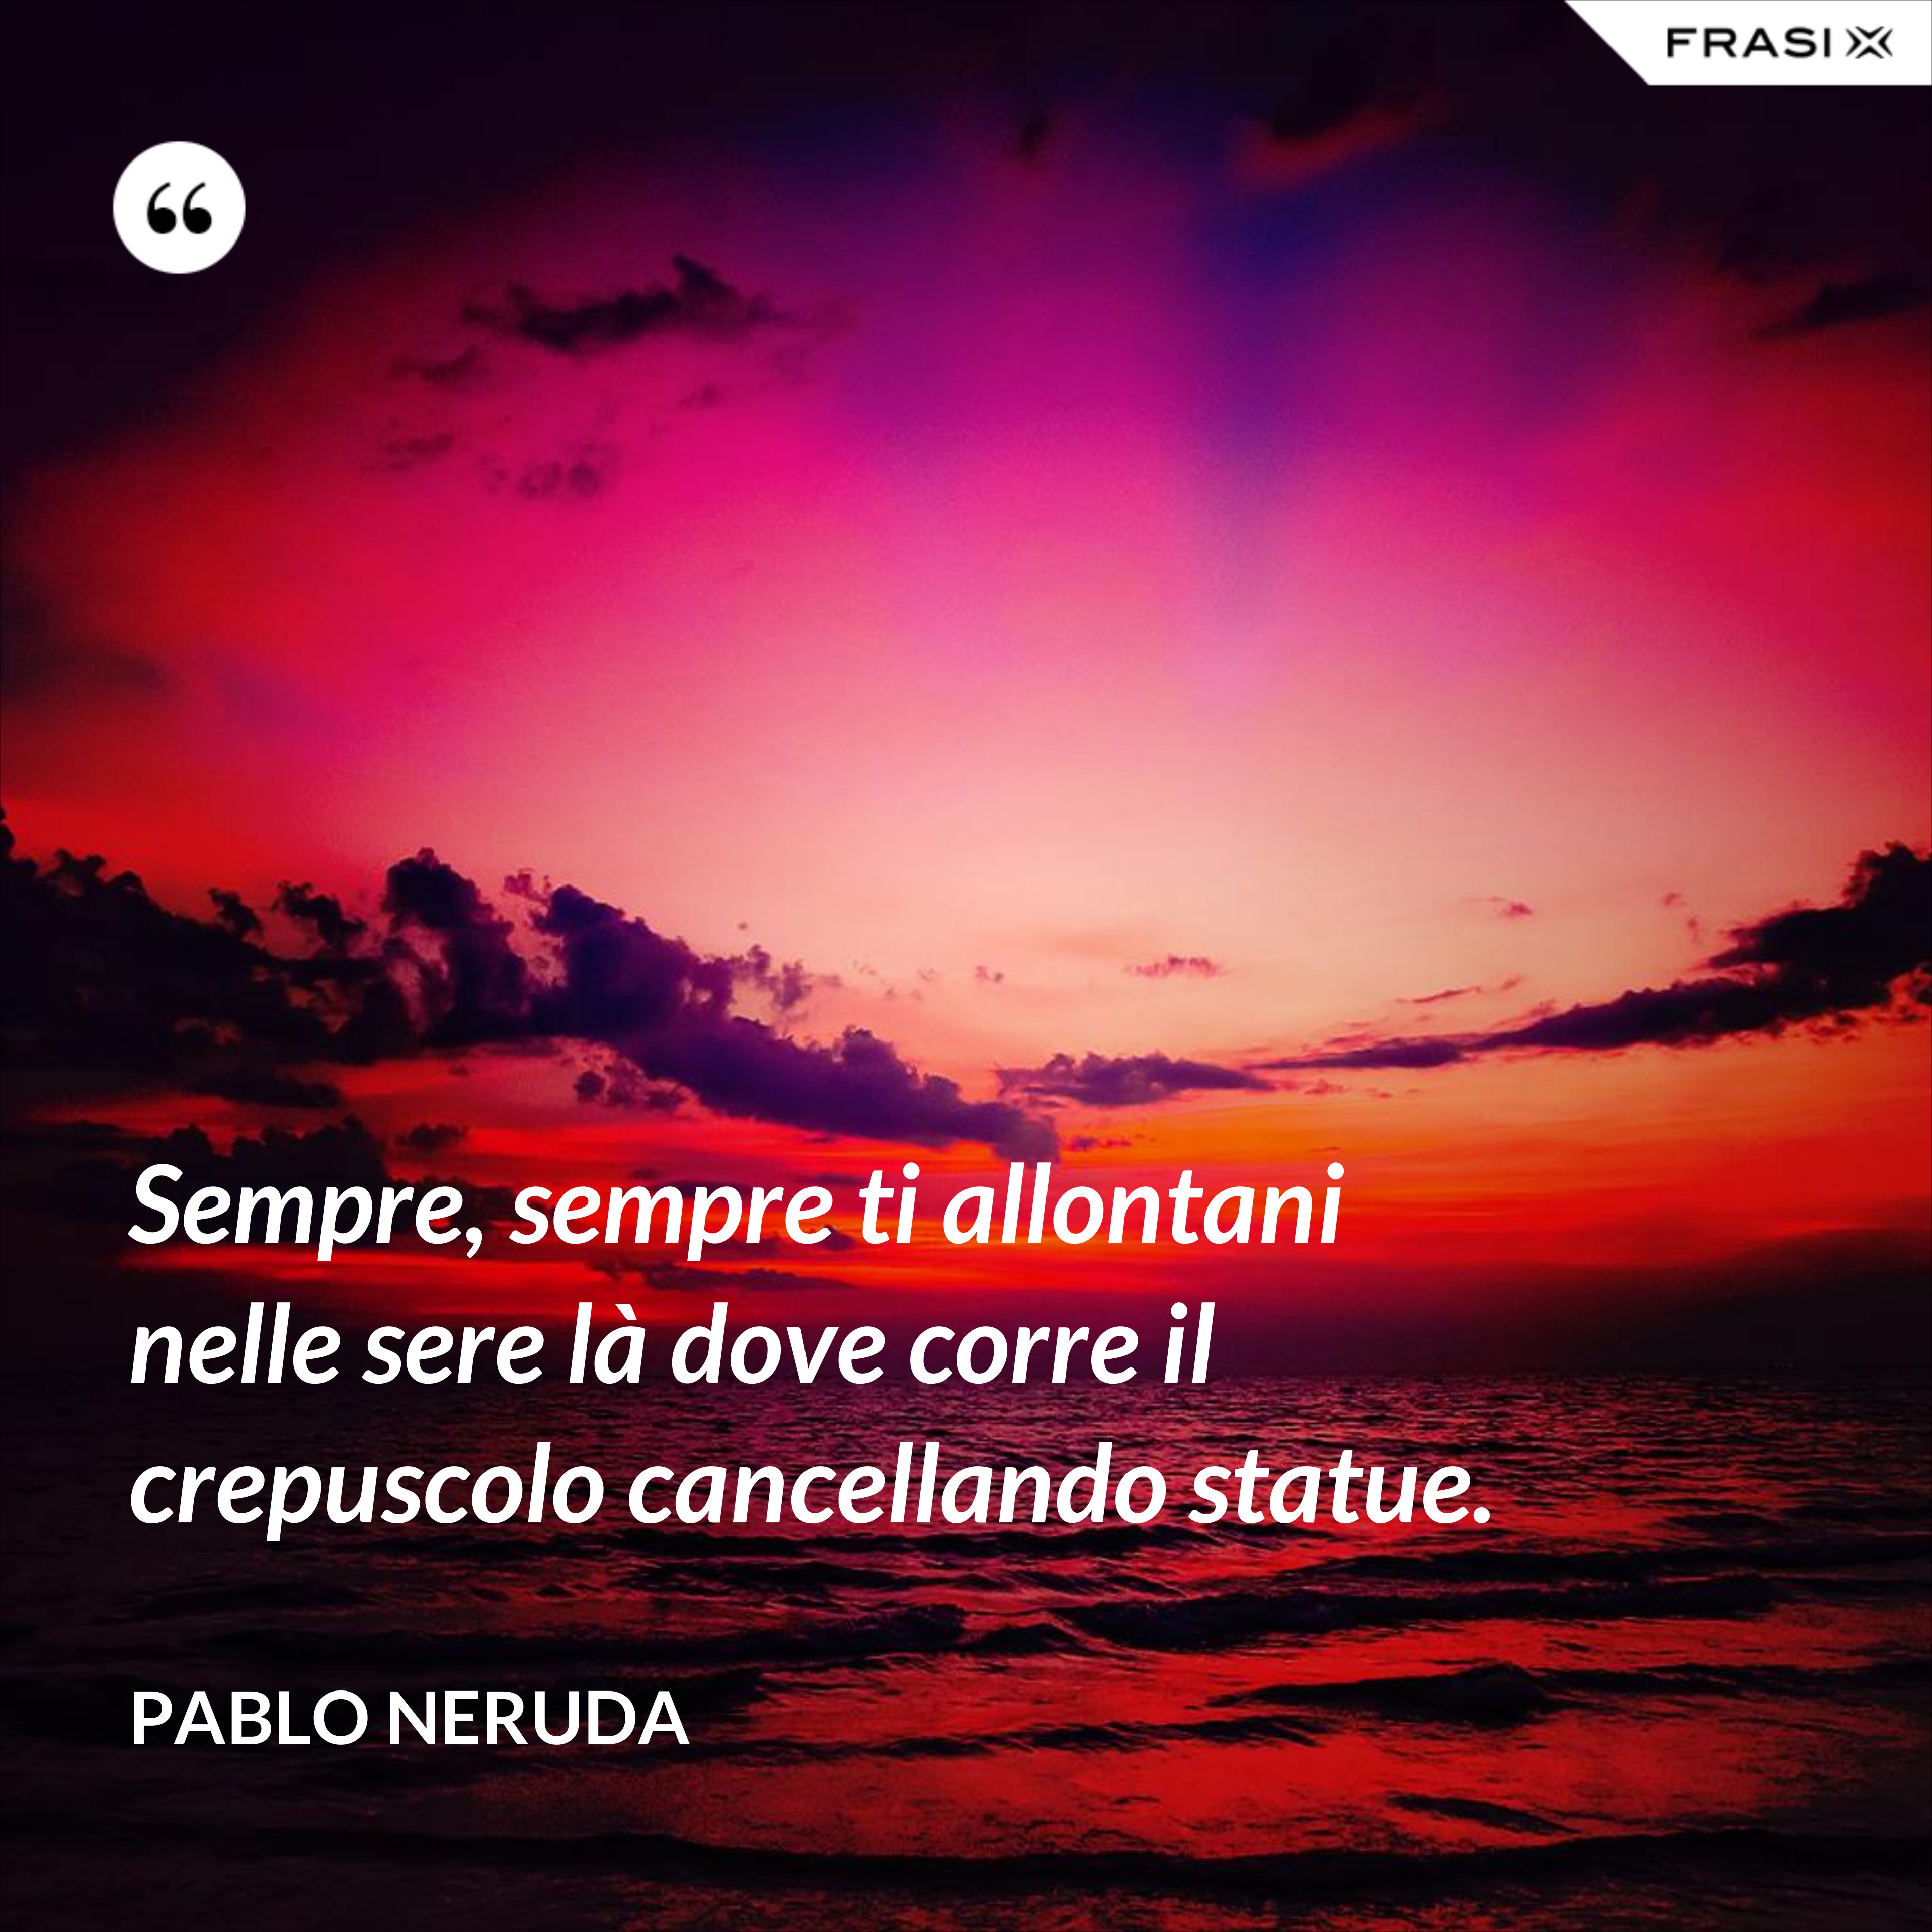 Sempre, sempre ti allontani nelle sere là dove corre il crepuscolo cancellando statue. - Pablo Neruda